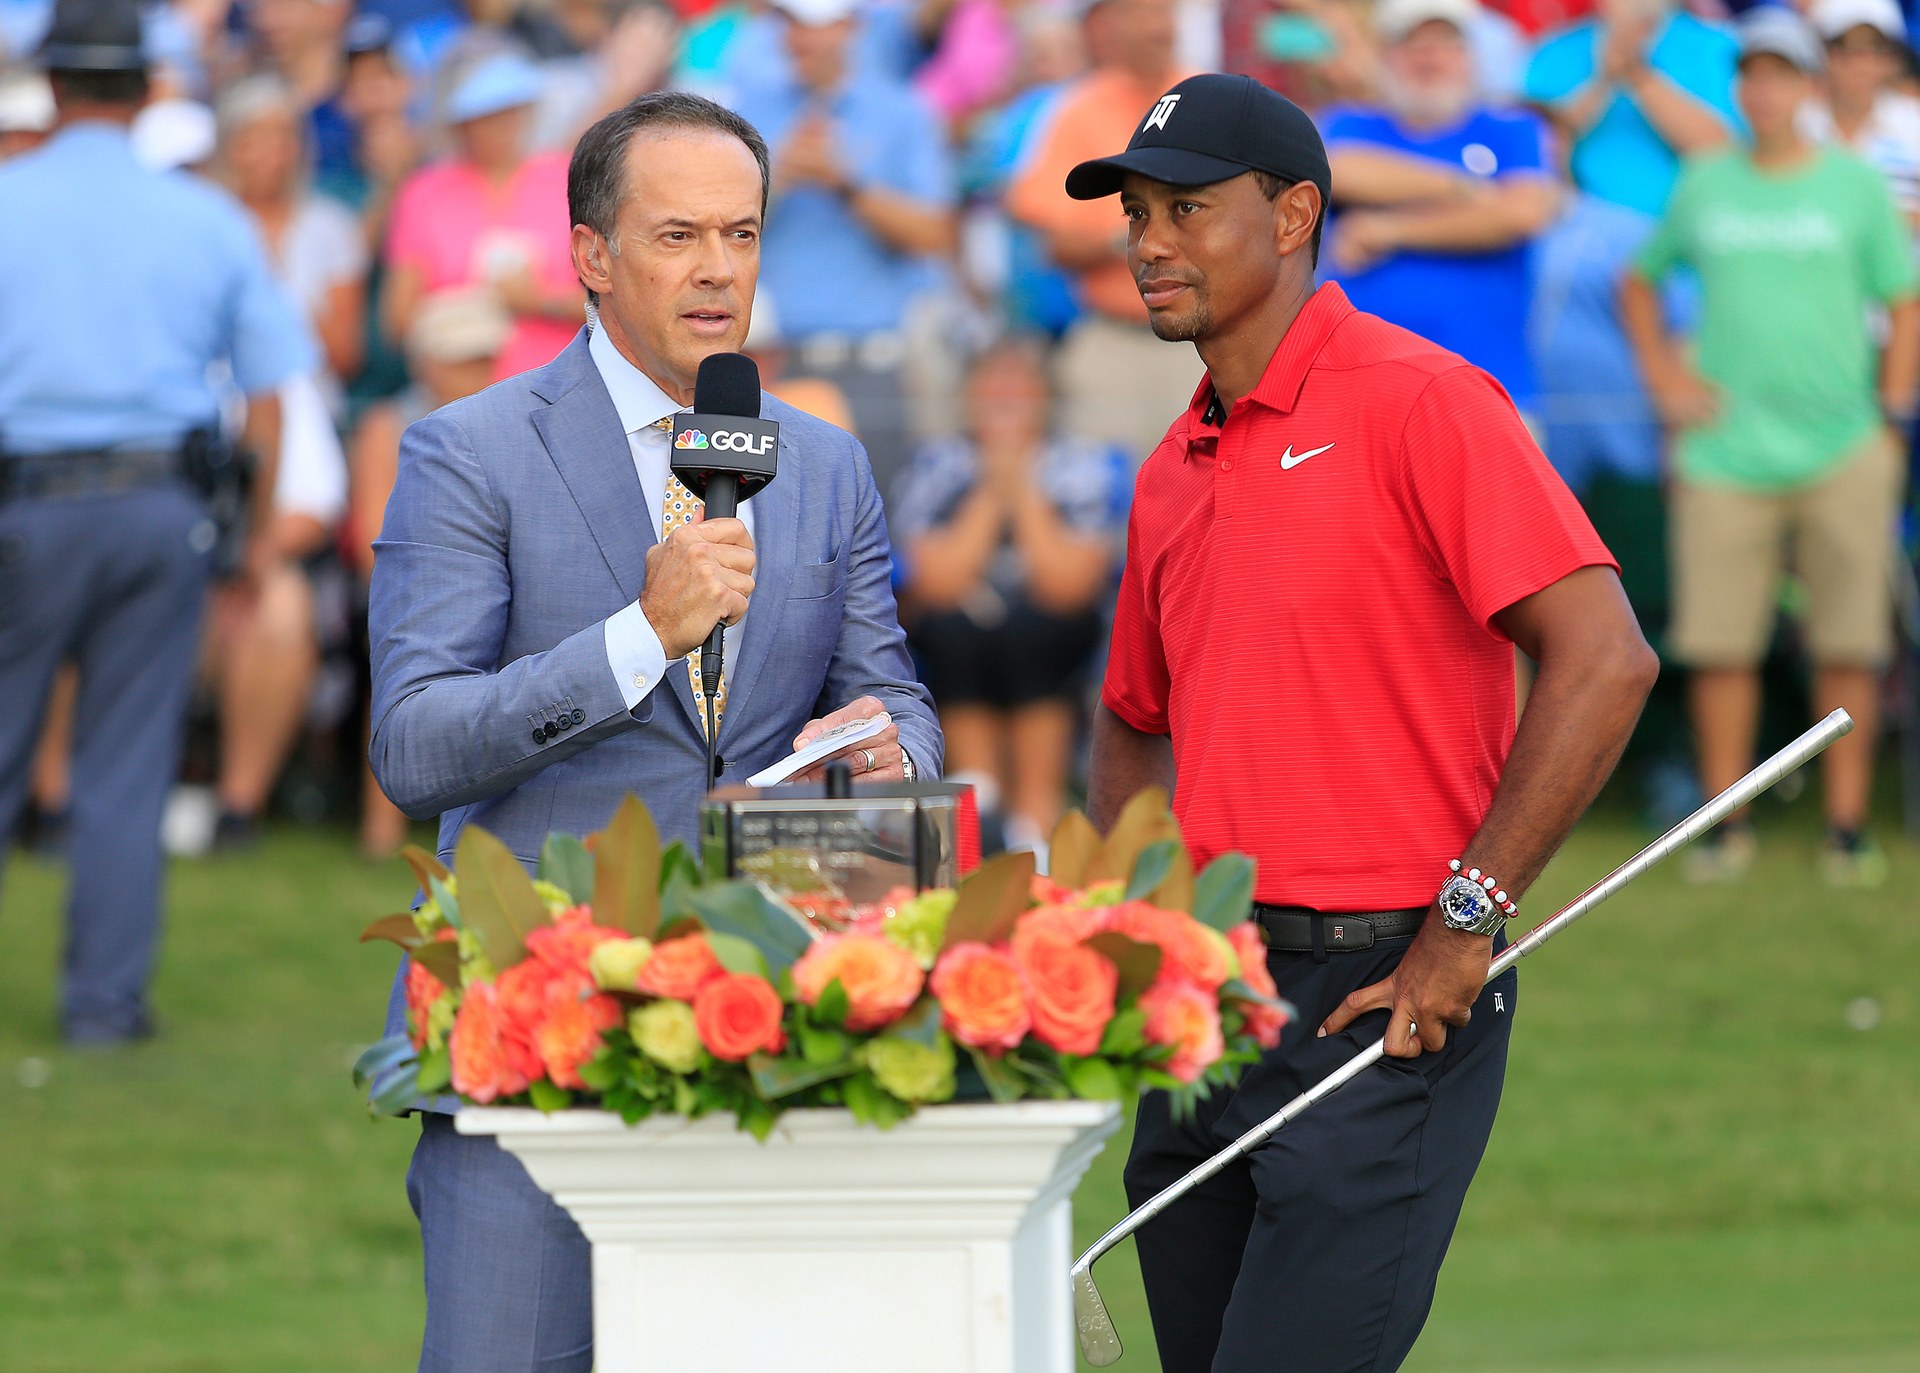 Tiger Woods lần đầu giành giải thưởng Ben Hogan sau nỗ lực quay lại với golf